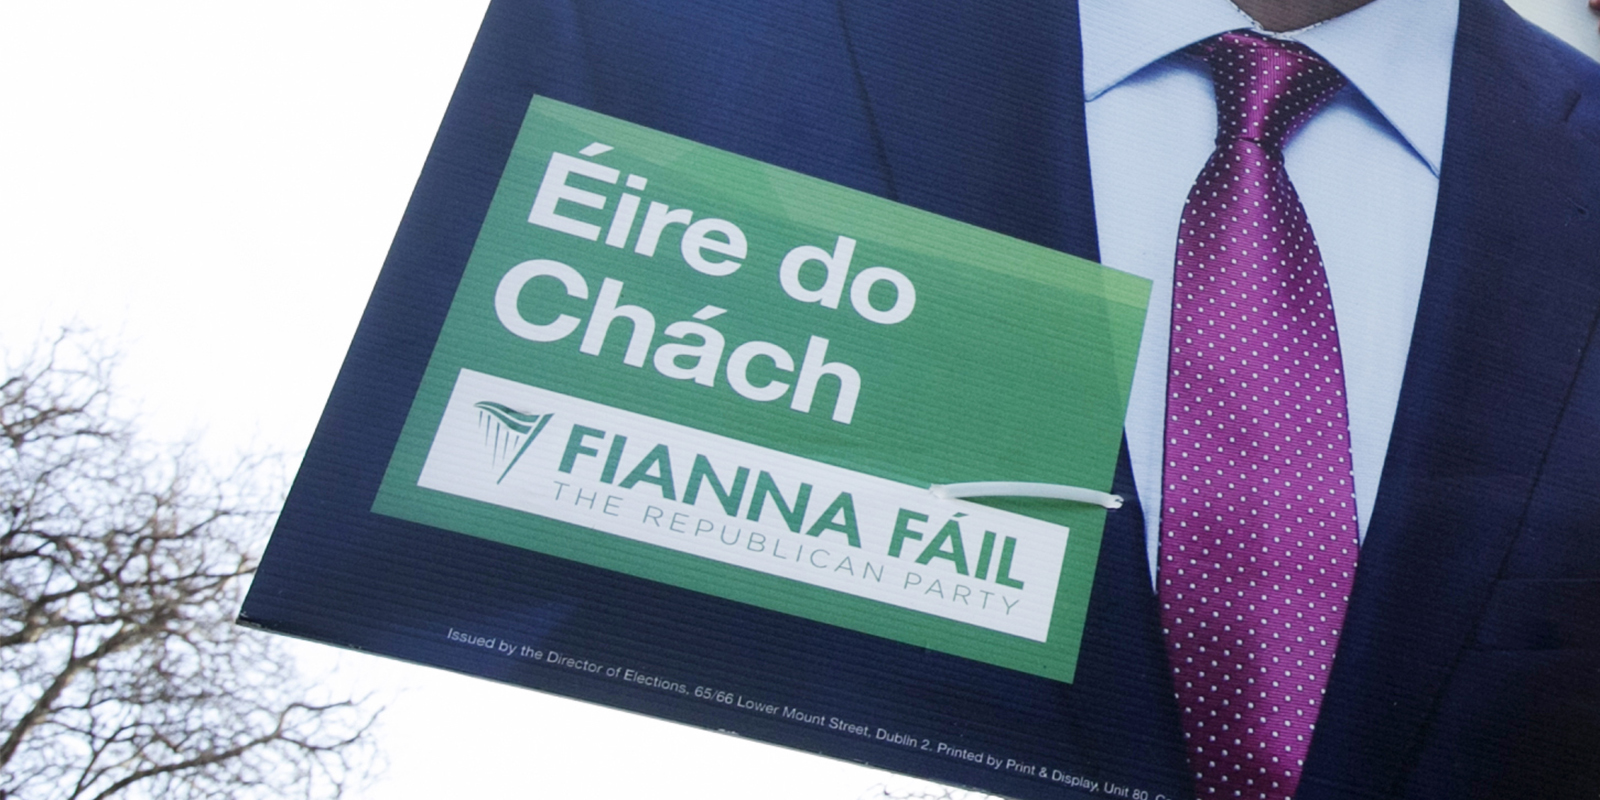 An bhfuil suíochán ligthe le sruth ag Fianna Fáil i gConamara?